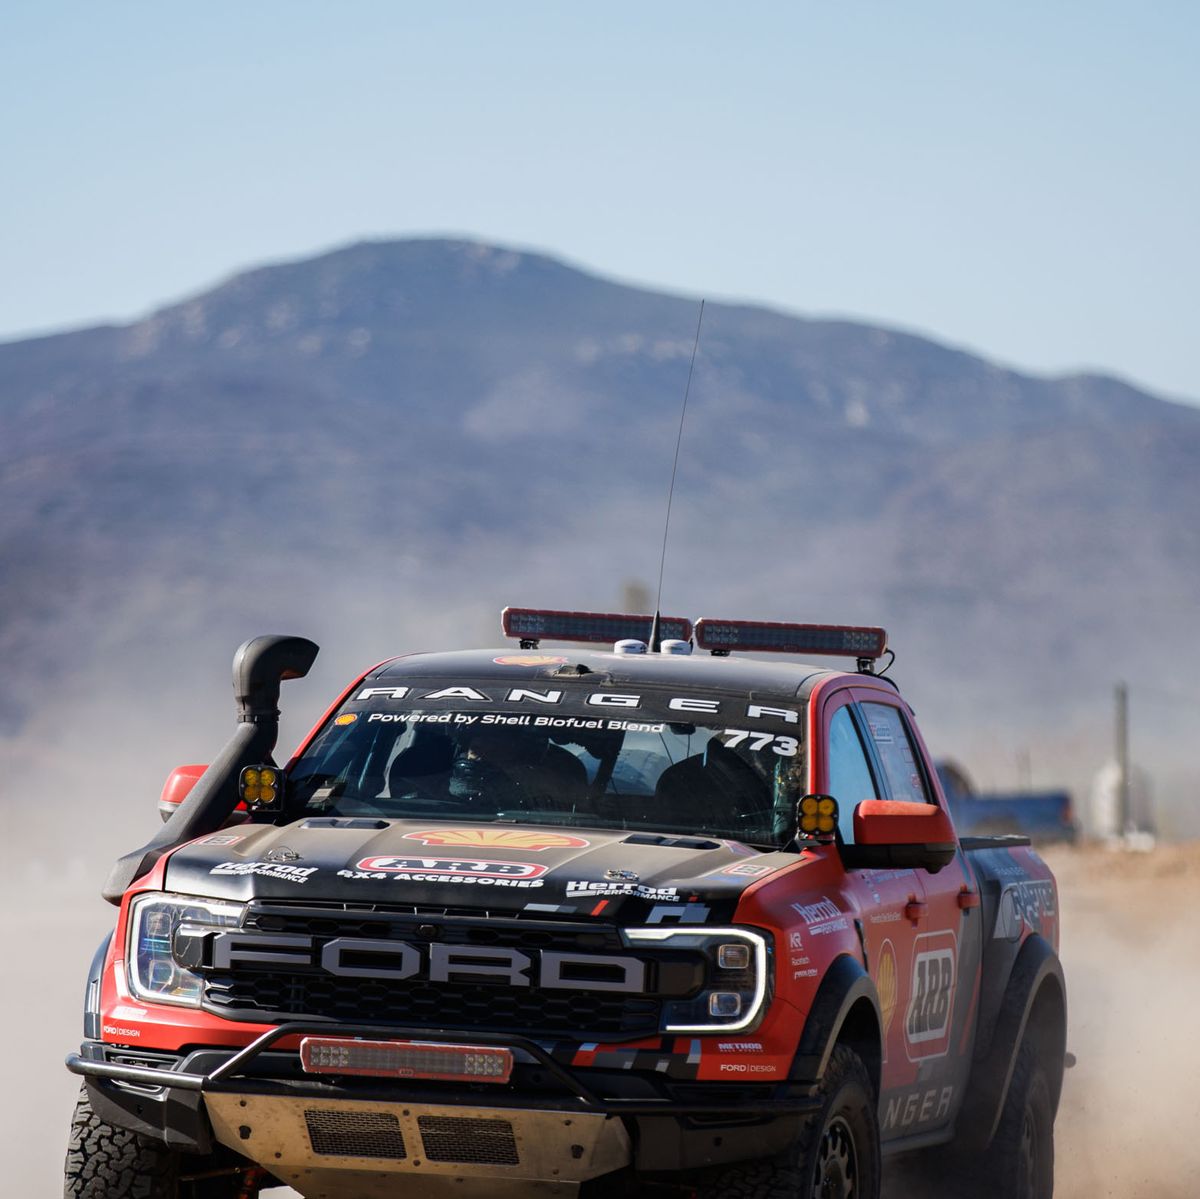 Ford Ranger Raptor Drives Back Home After Surviving Baja 1000